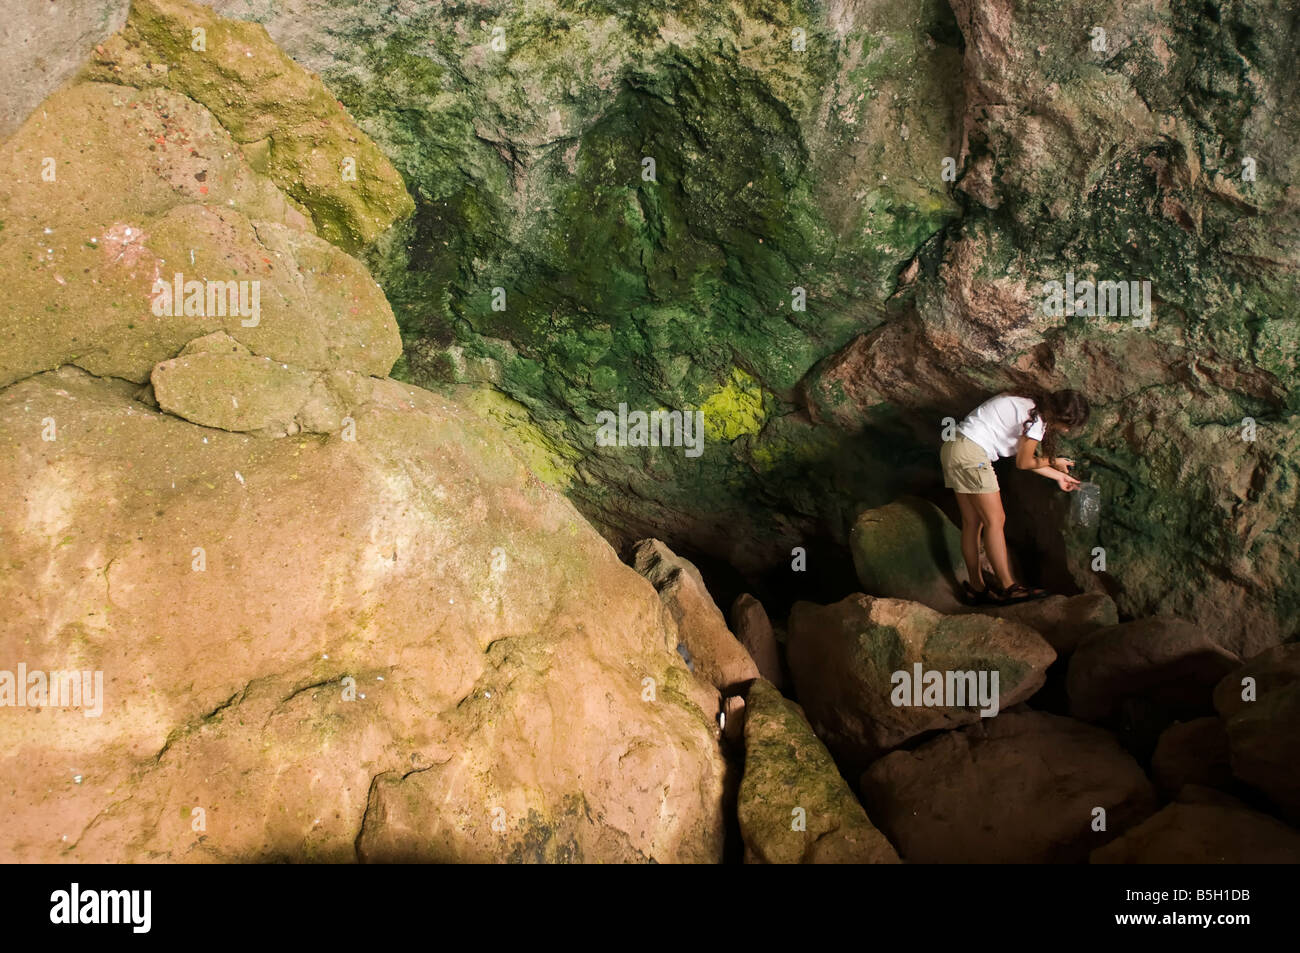 Biologe sammeln Algen Proben in einer marine Höhle, Foca, Türkei Stockfoto